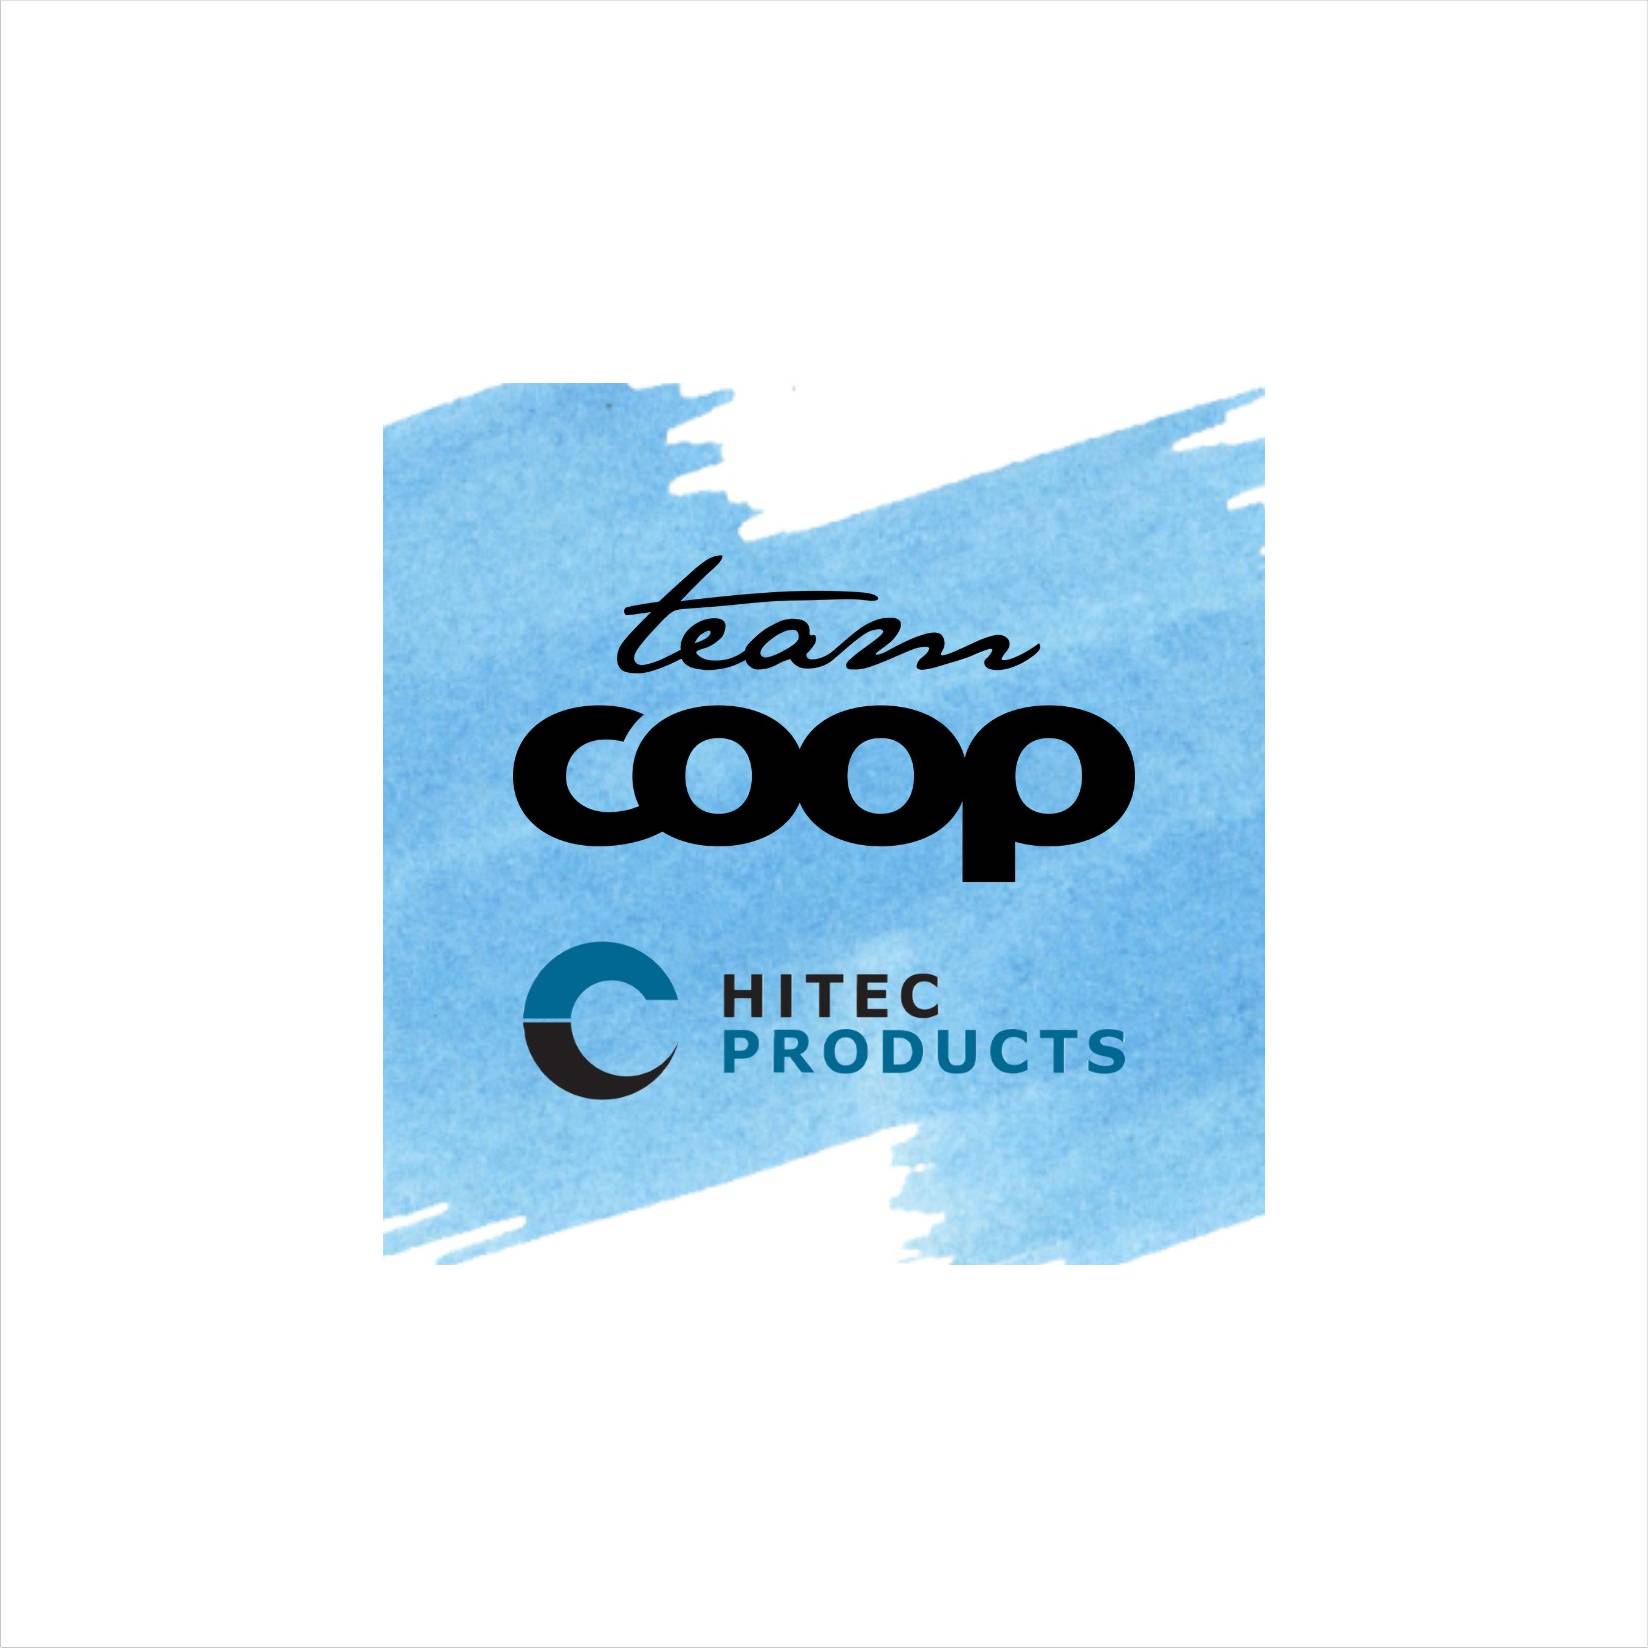 Logo de l'équipe cycliste Team Coop Hitec Products